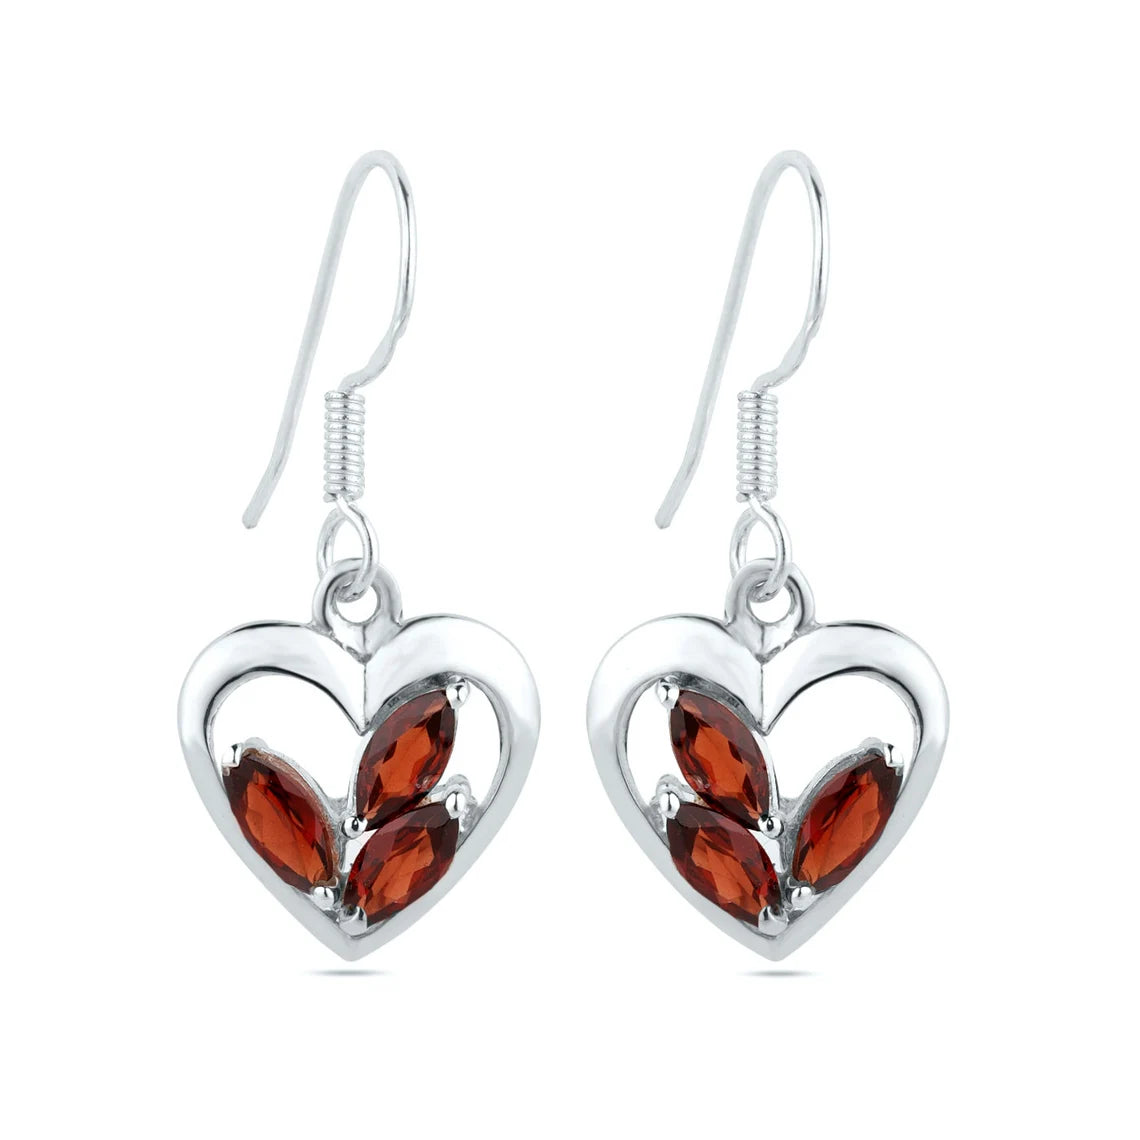 Garnet flower dangle earrings, red garnet heart drop earrings, January birthstone earrings, gift for mom, gift for her